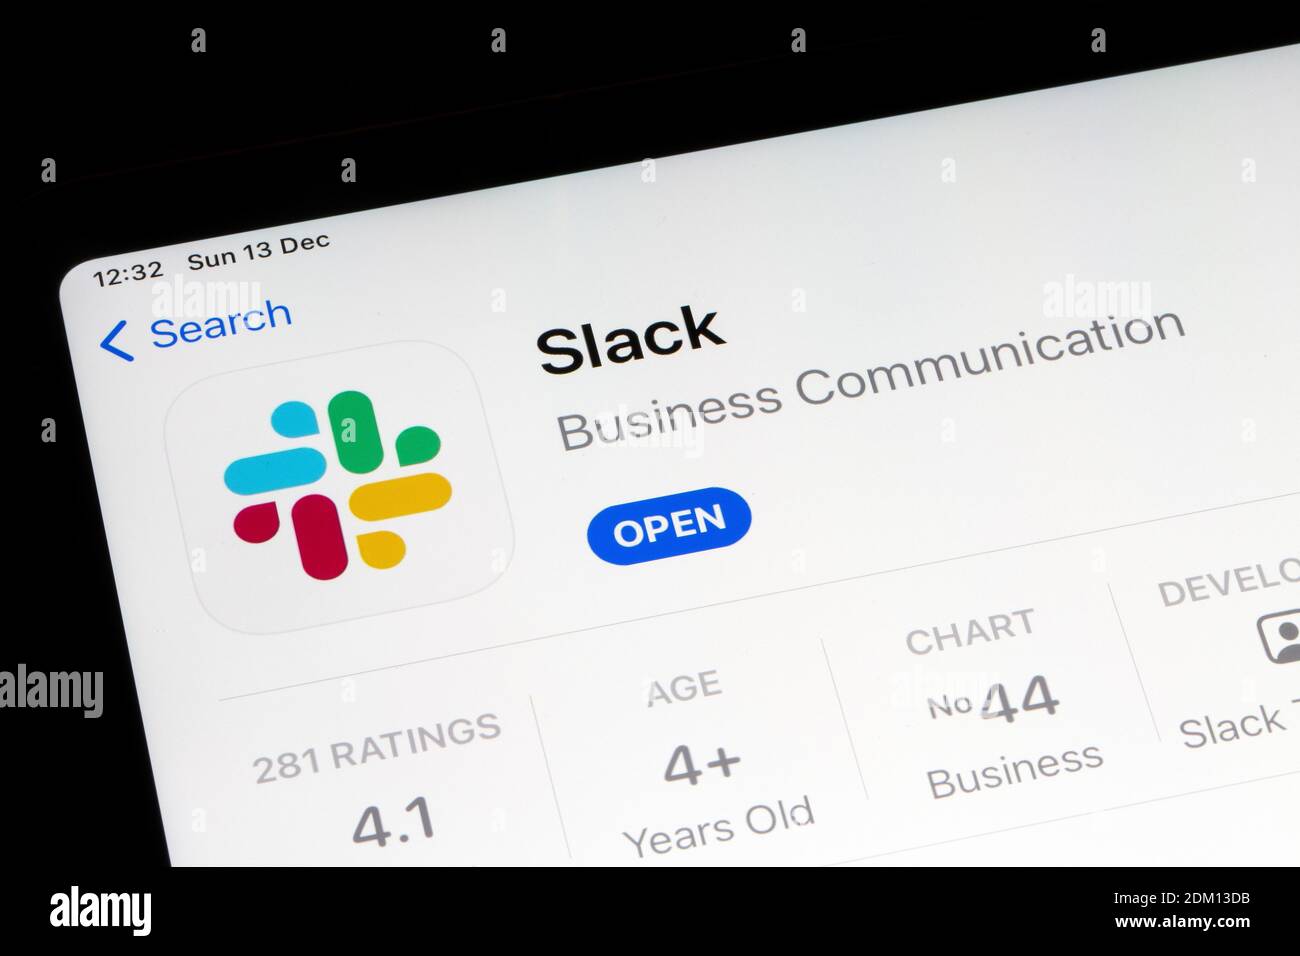 Ostersund, Sweden - Dec 13, 2020: Slack app icon. Slack is a B2B software, workplace messenger, team communication tool or platform. Stock Photo